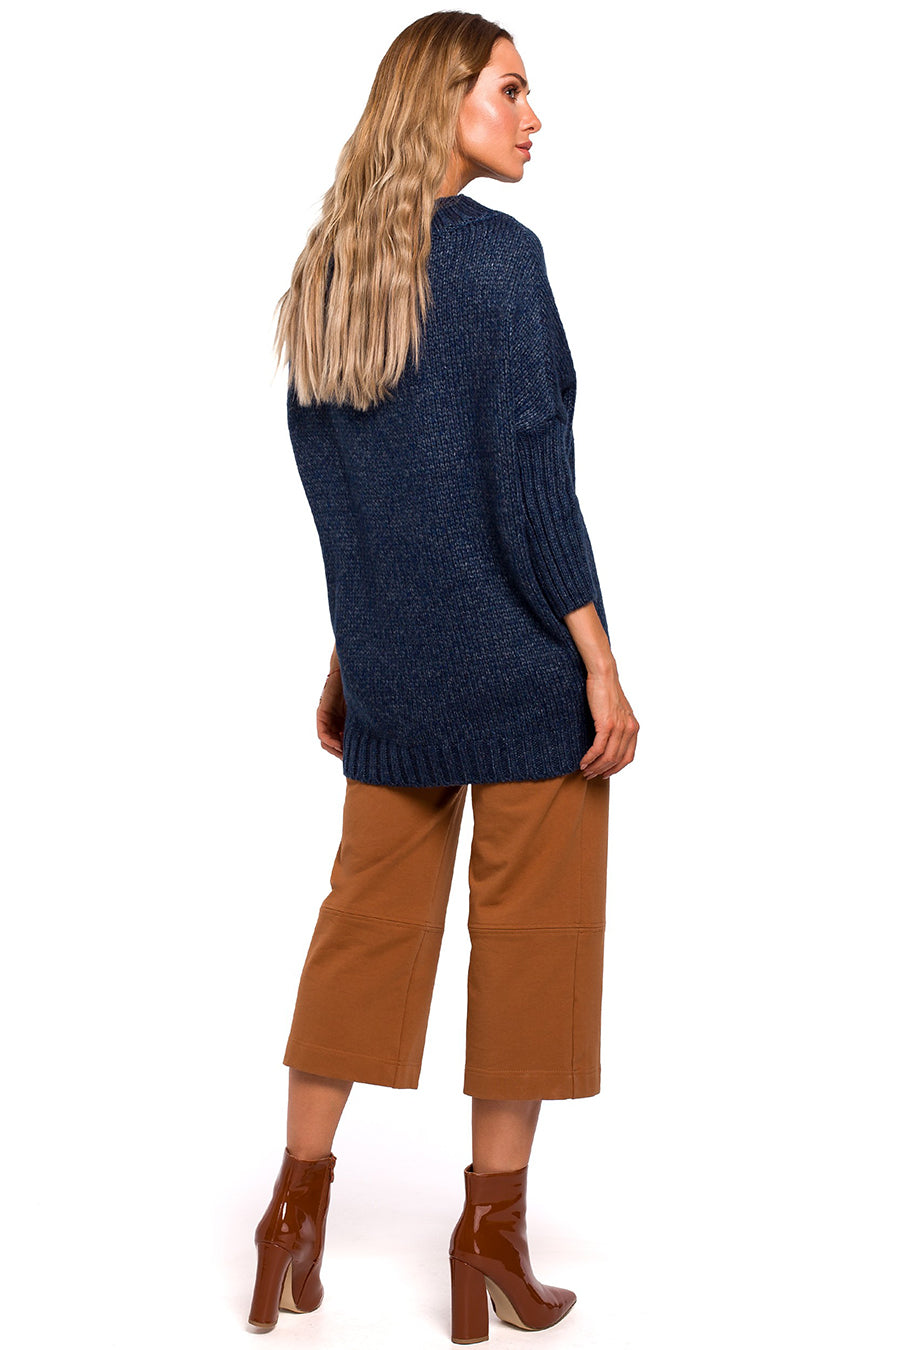 Дамски пуловер Lenore, Тъмносин 2